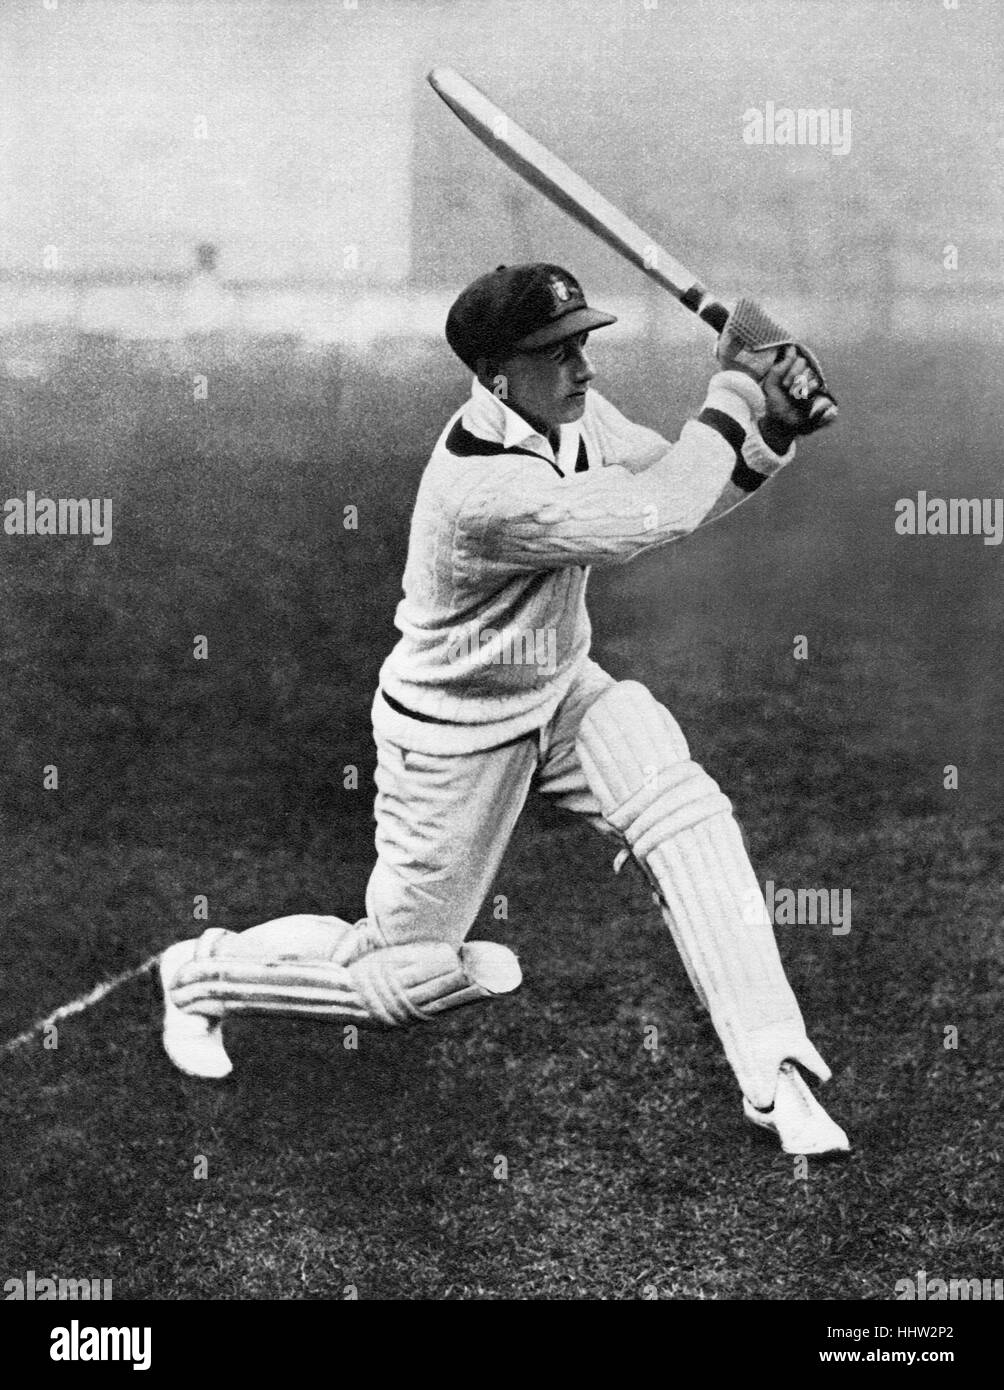 Don Bradman (27 agosto 1908 - 25 febbraio 2001), battere i record di Australian cricketer, giocando al Lords nel 1930, dove ha fatto Foto Stock